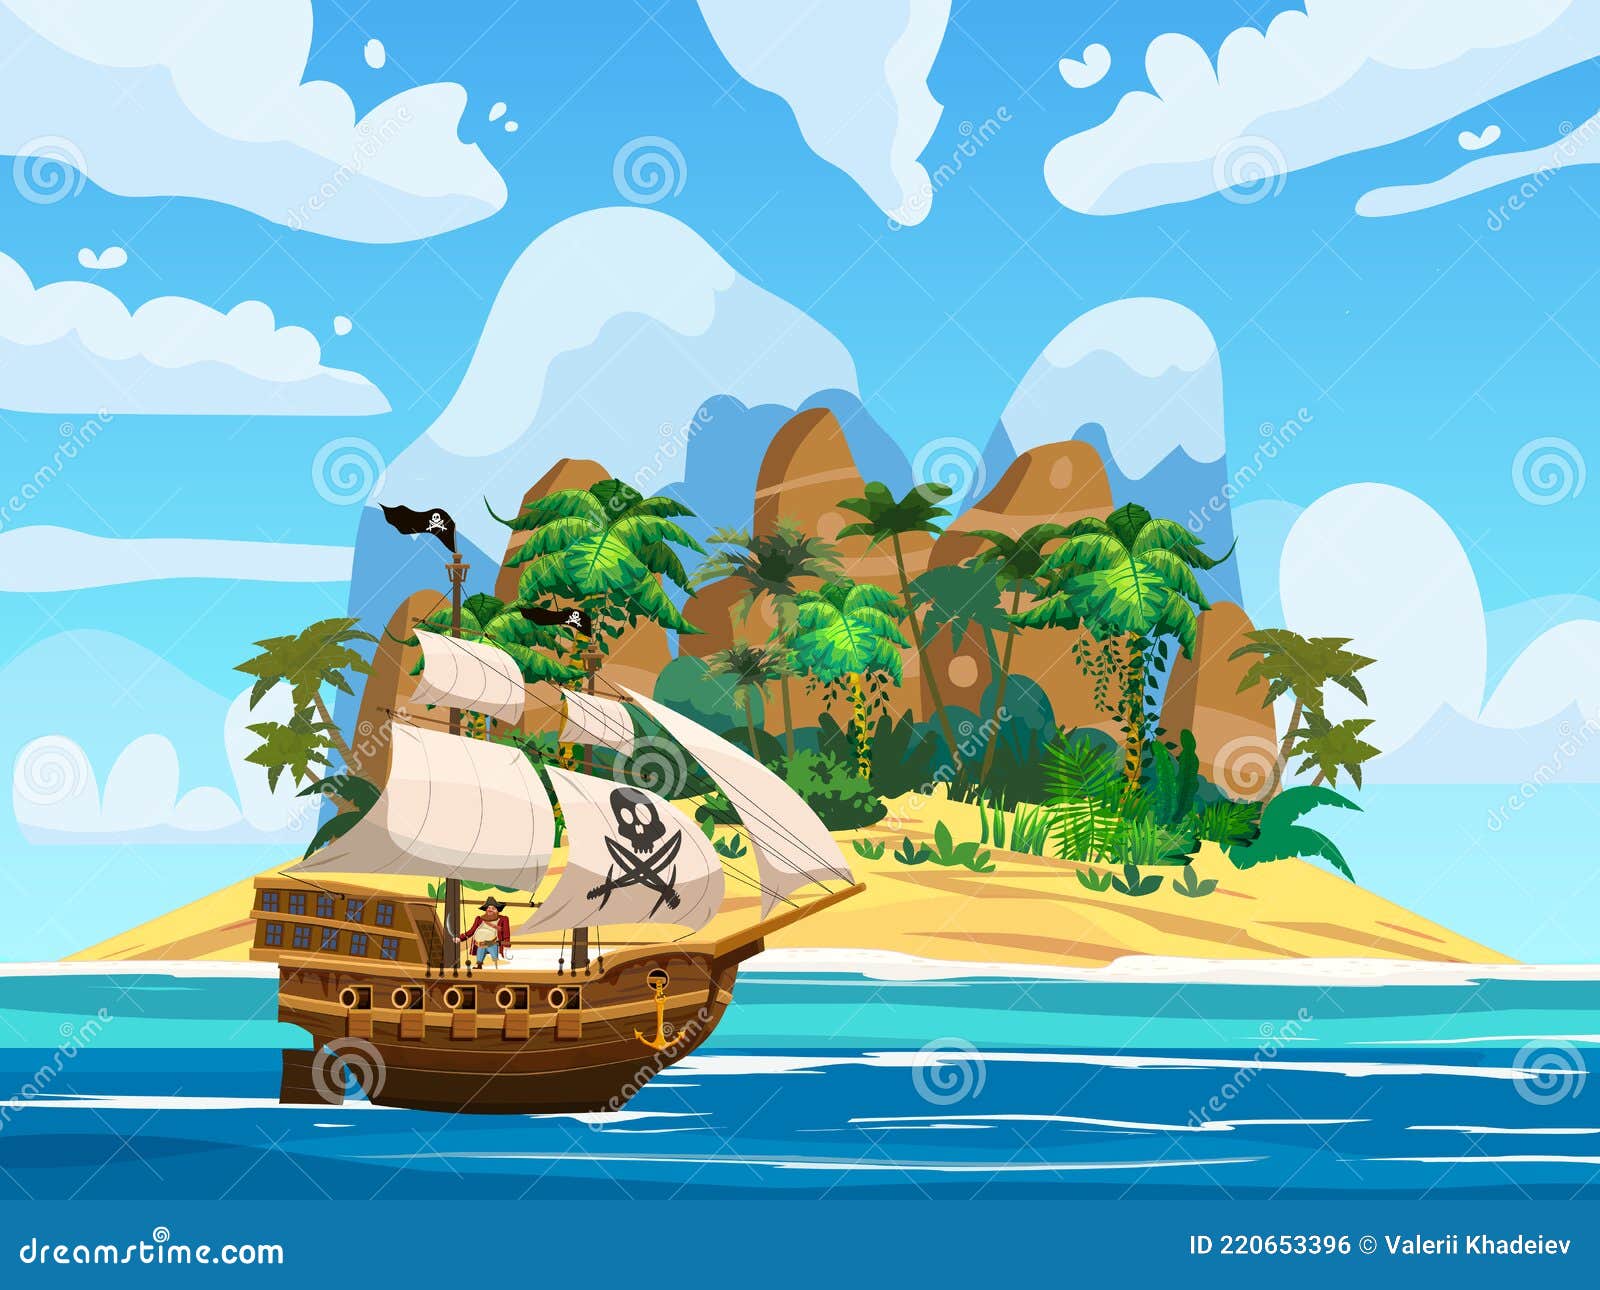 https://thumbs.dreamstime.com/z/bateau-pirate-sous-voile-dans-l-oc%C3%A9an-%C3%AEle-tr%C3%A9sor-palmiers-tropicaux-montagnes-jeu-d-aventure-en-mer-vecteur-dessin-vectoriel-220653396.jpg